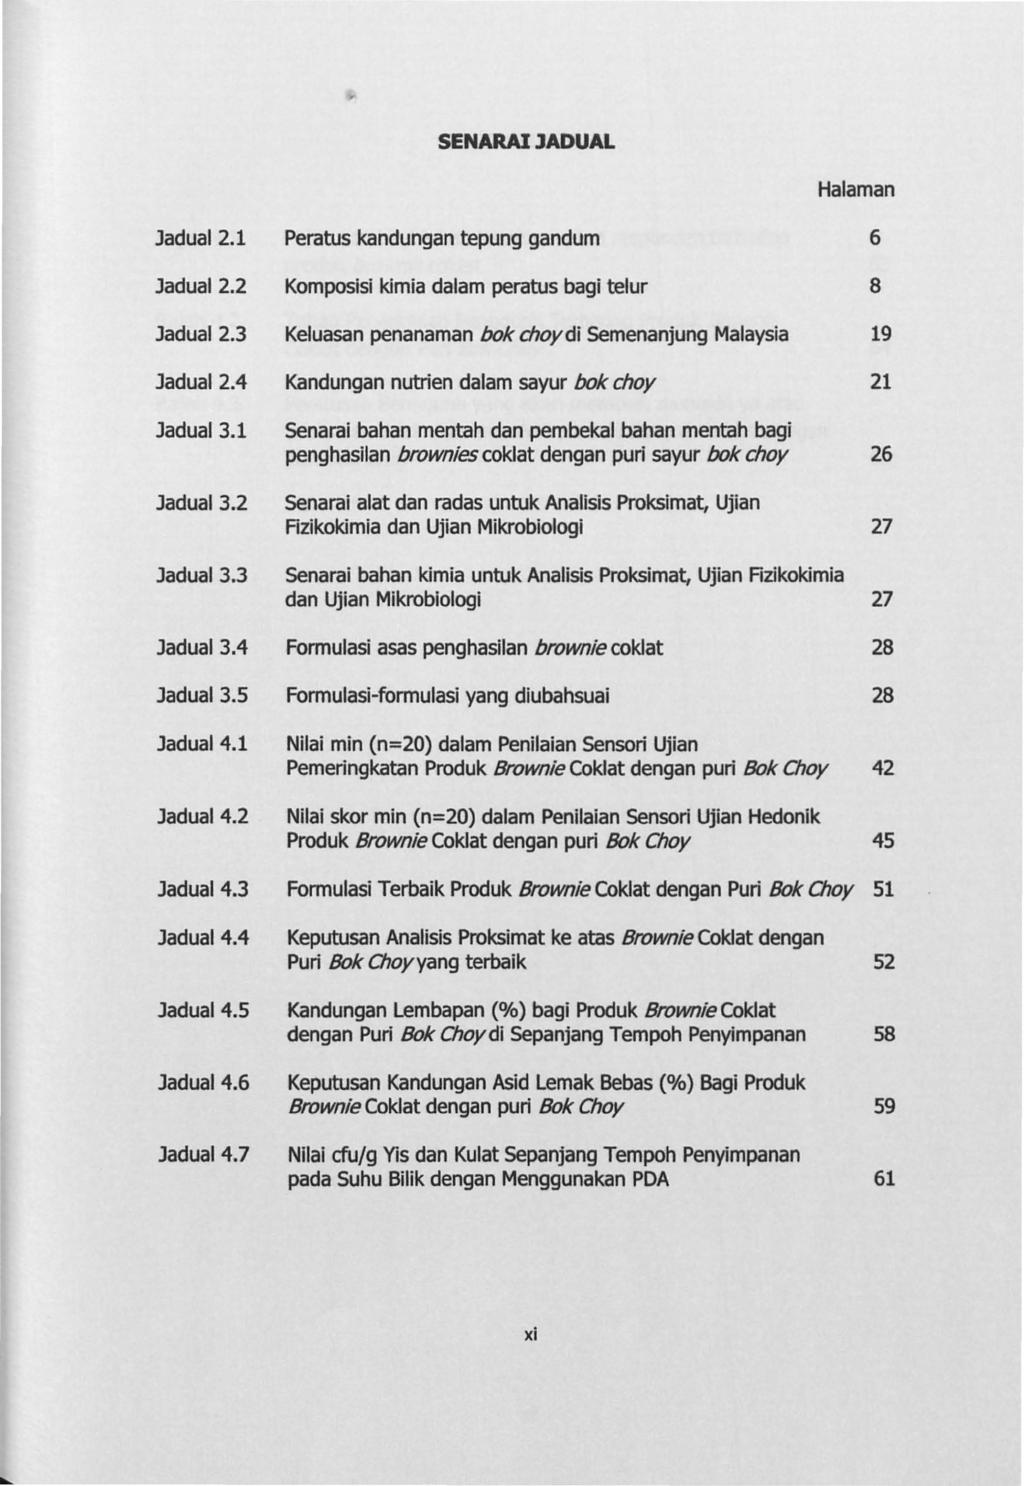 SENARAIJADUAL Halaman Jadual2.1 Peratus kandungan tepung gandum 6 Jadual2.2 Komposisi kimia dalam peratus bagi telur 8 Jadual2.3 Keluasan penanaman bok choydi Semenanjung Malaysia 19 Jadual2.